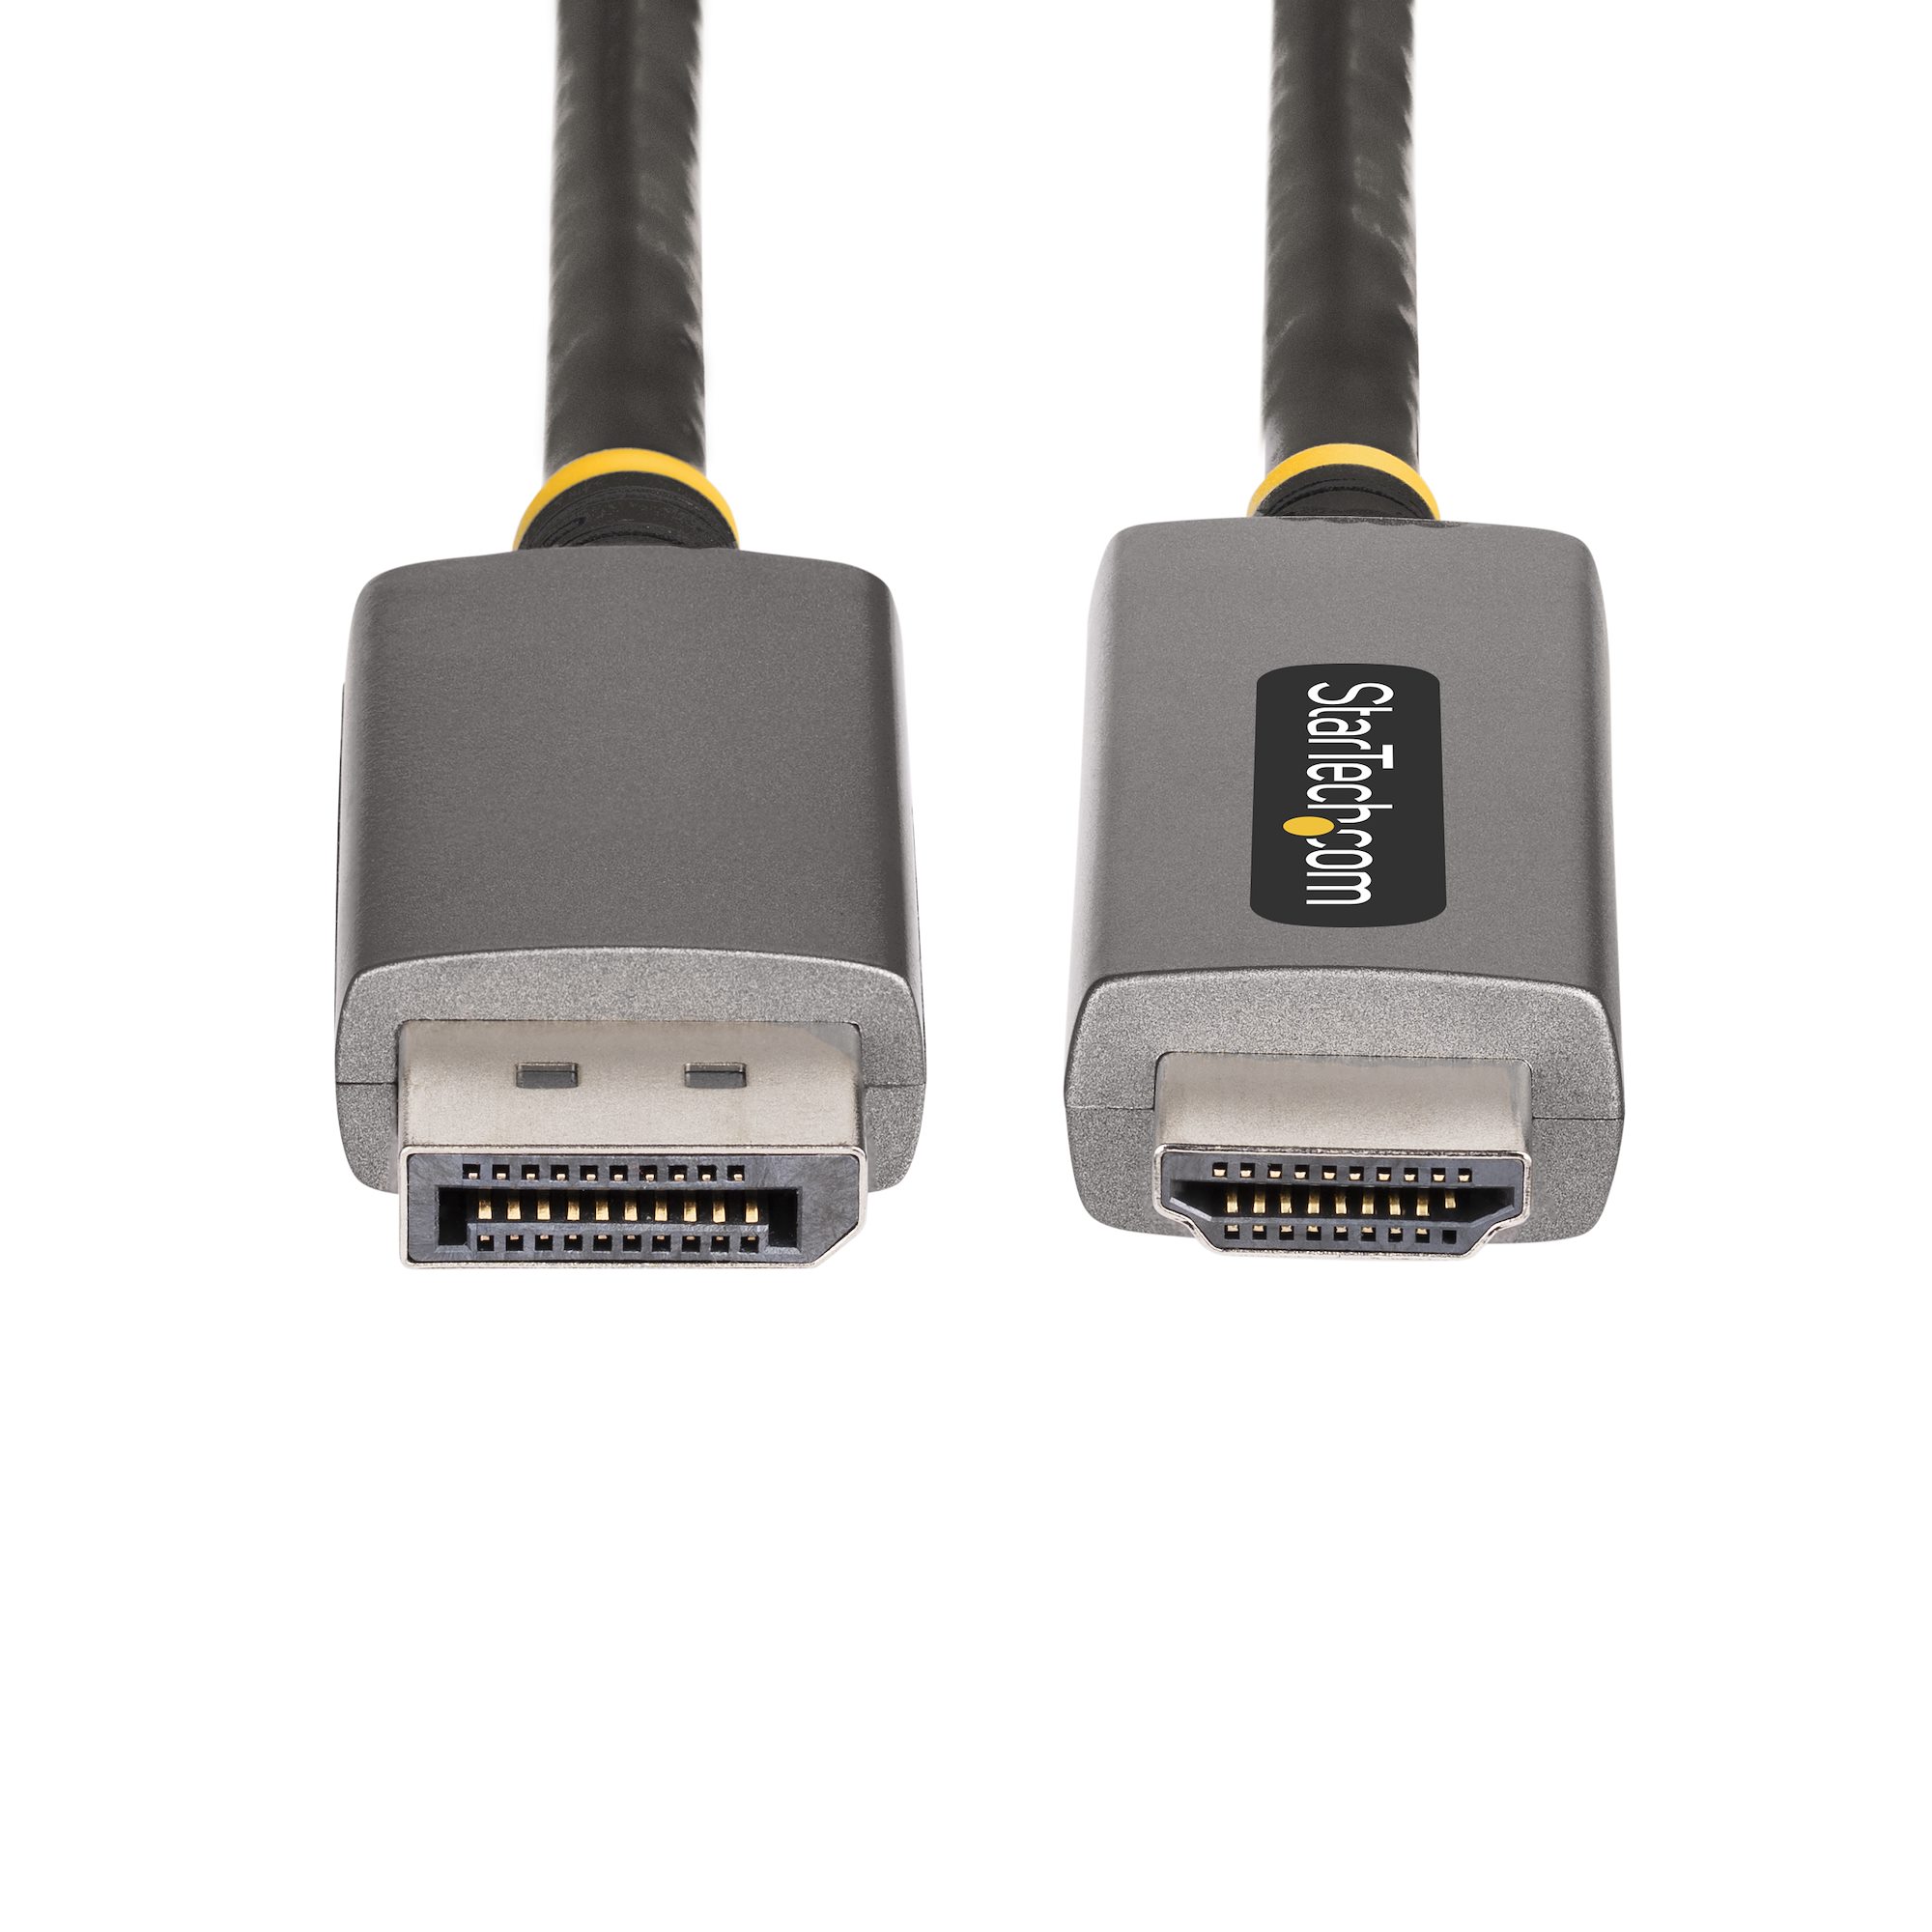 Câble DisplayPort vers HDMI 2m - 4K 30Hz - Adaptateur DP vers HDMI -  Convertisseur pour Moniteur DP 1.2 à HDMI - Connecteur DP à Verrouillage -  Cordon